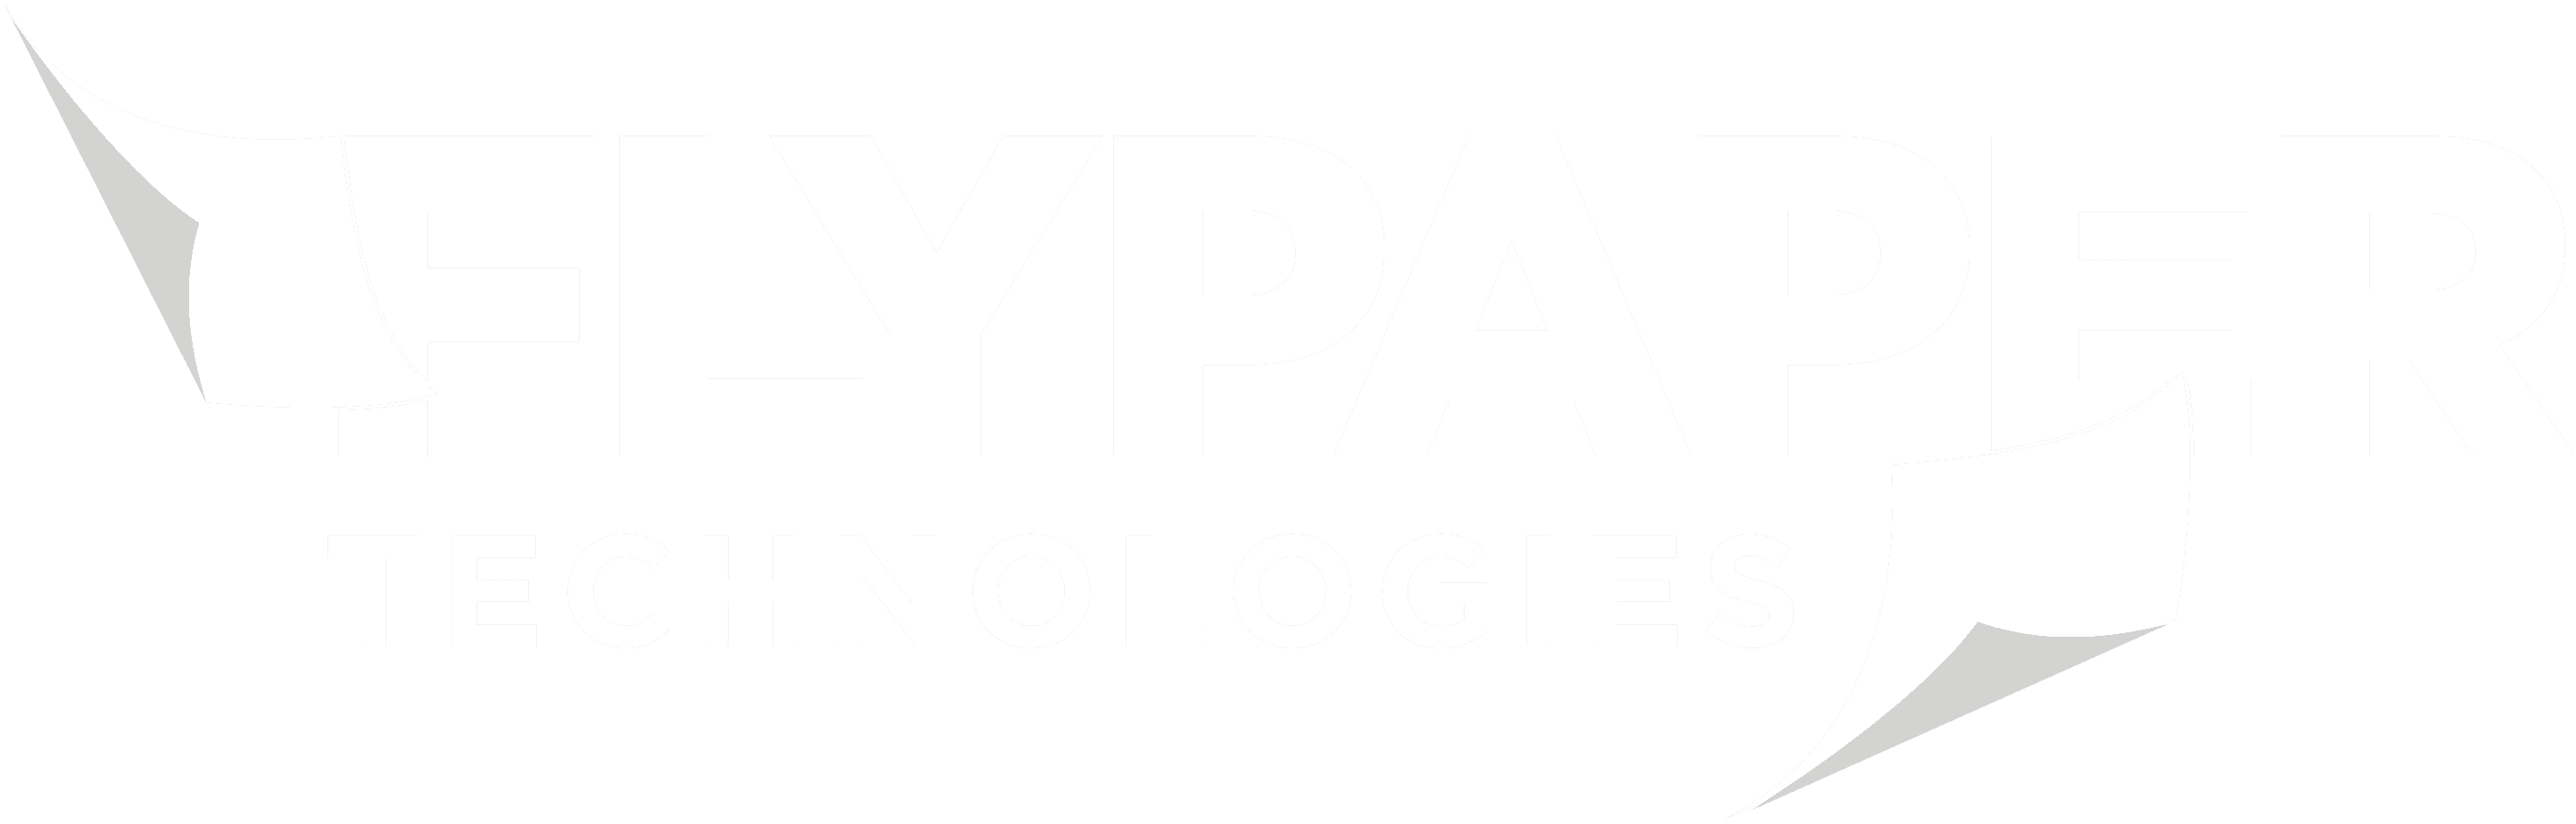 FlyPaper technologies logo white